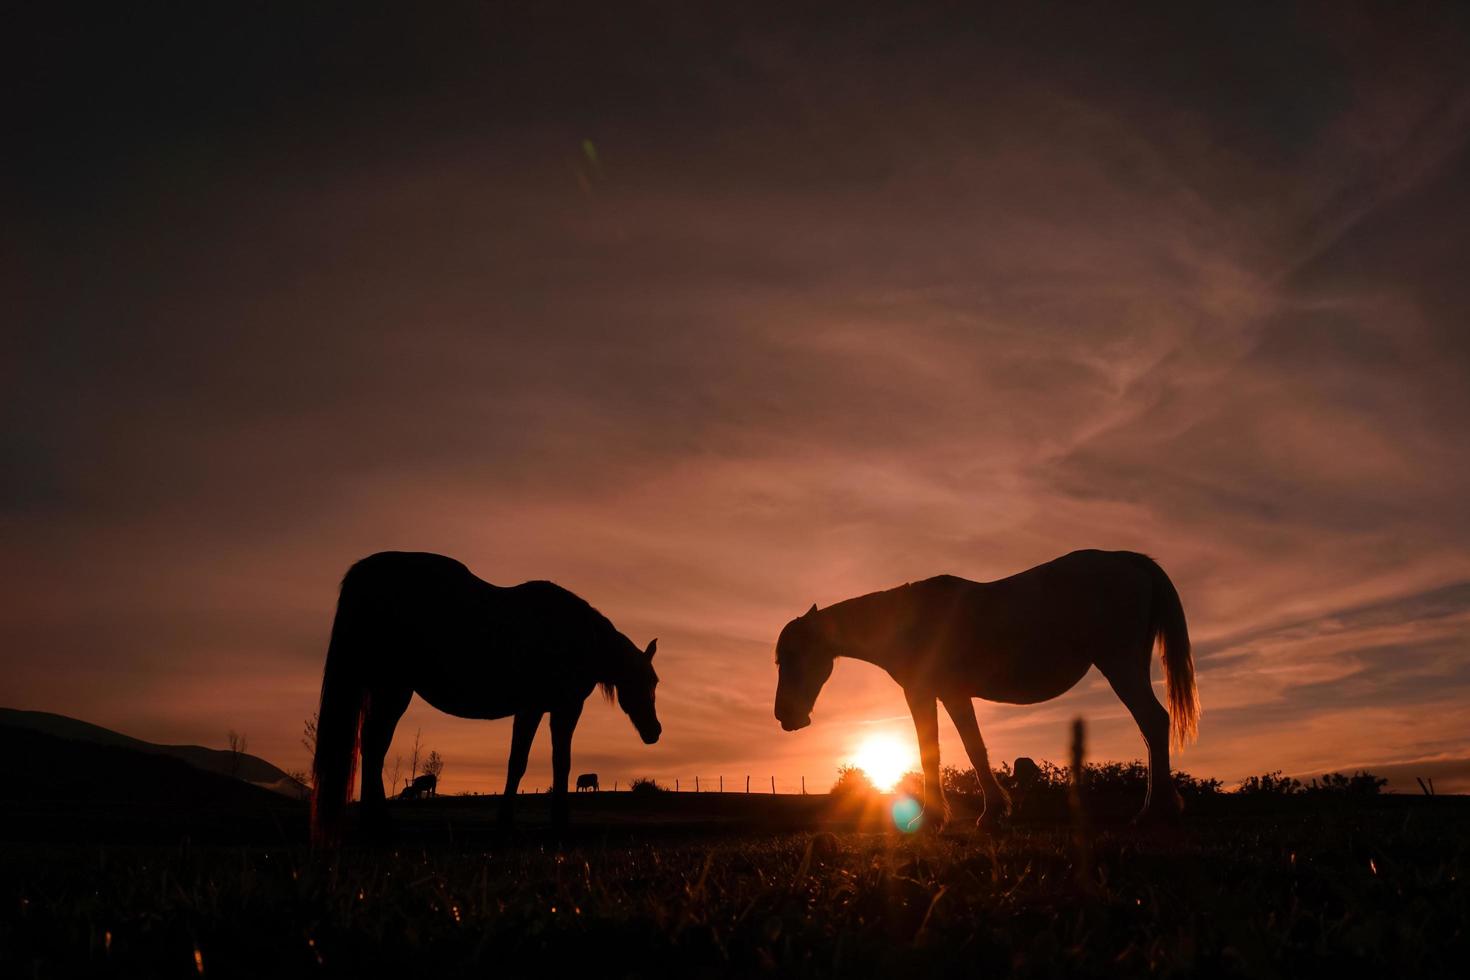 silhueta de cavalos no prado com um belo pôr do sol foto